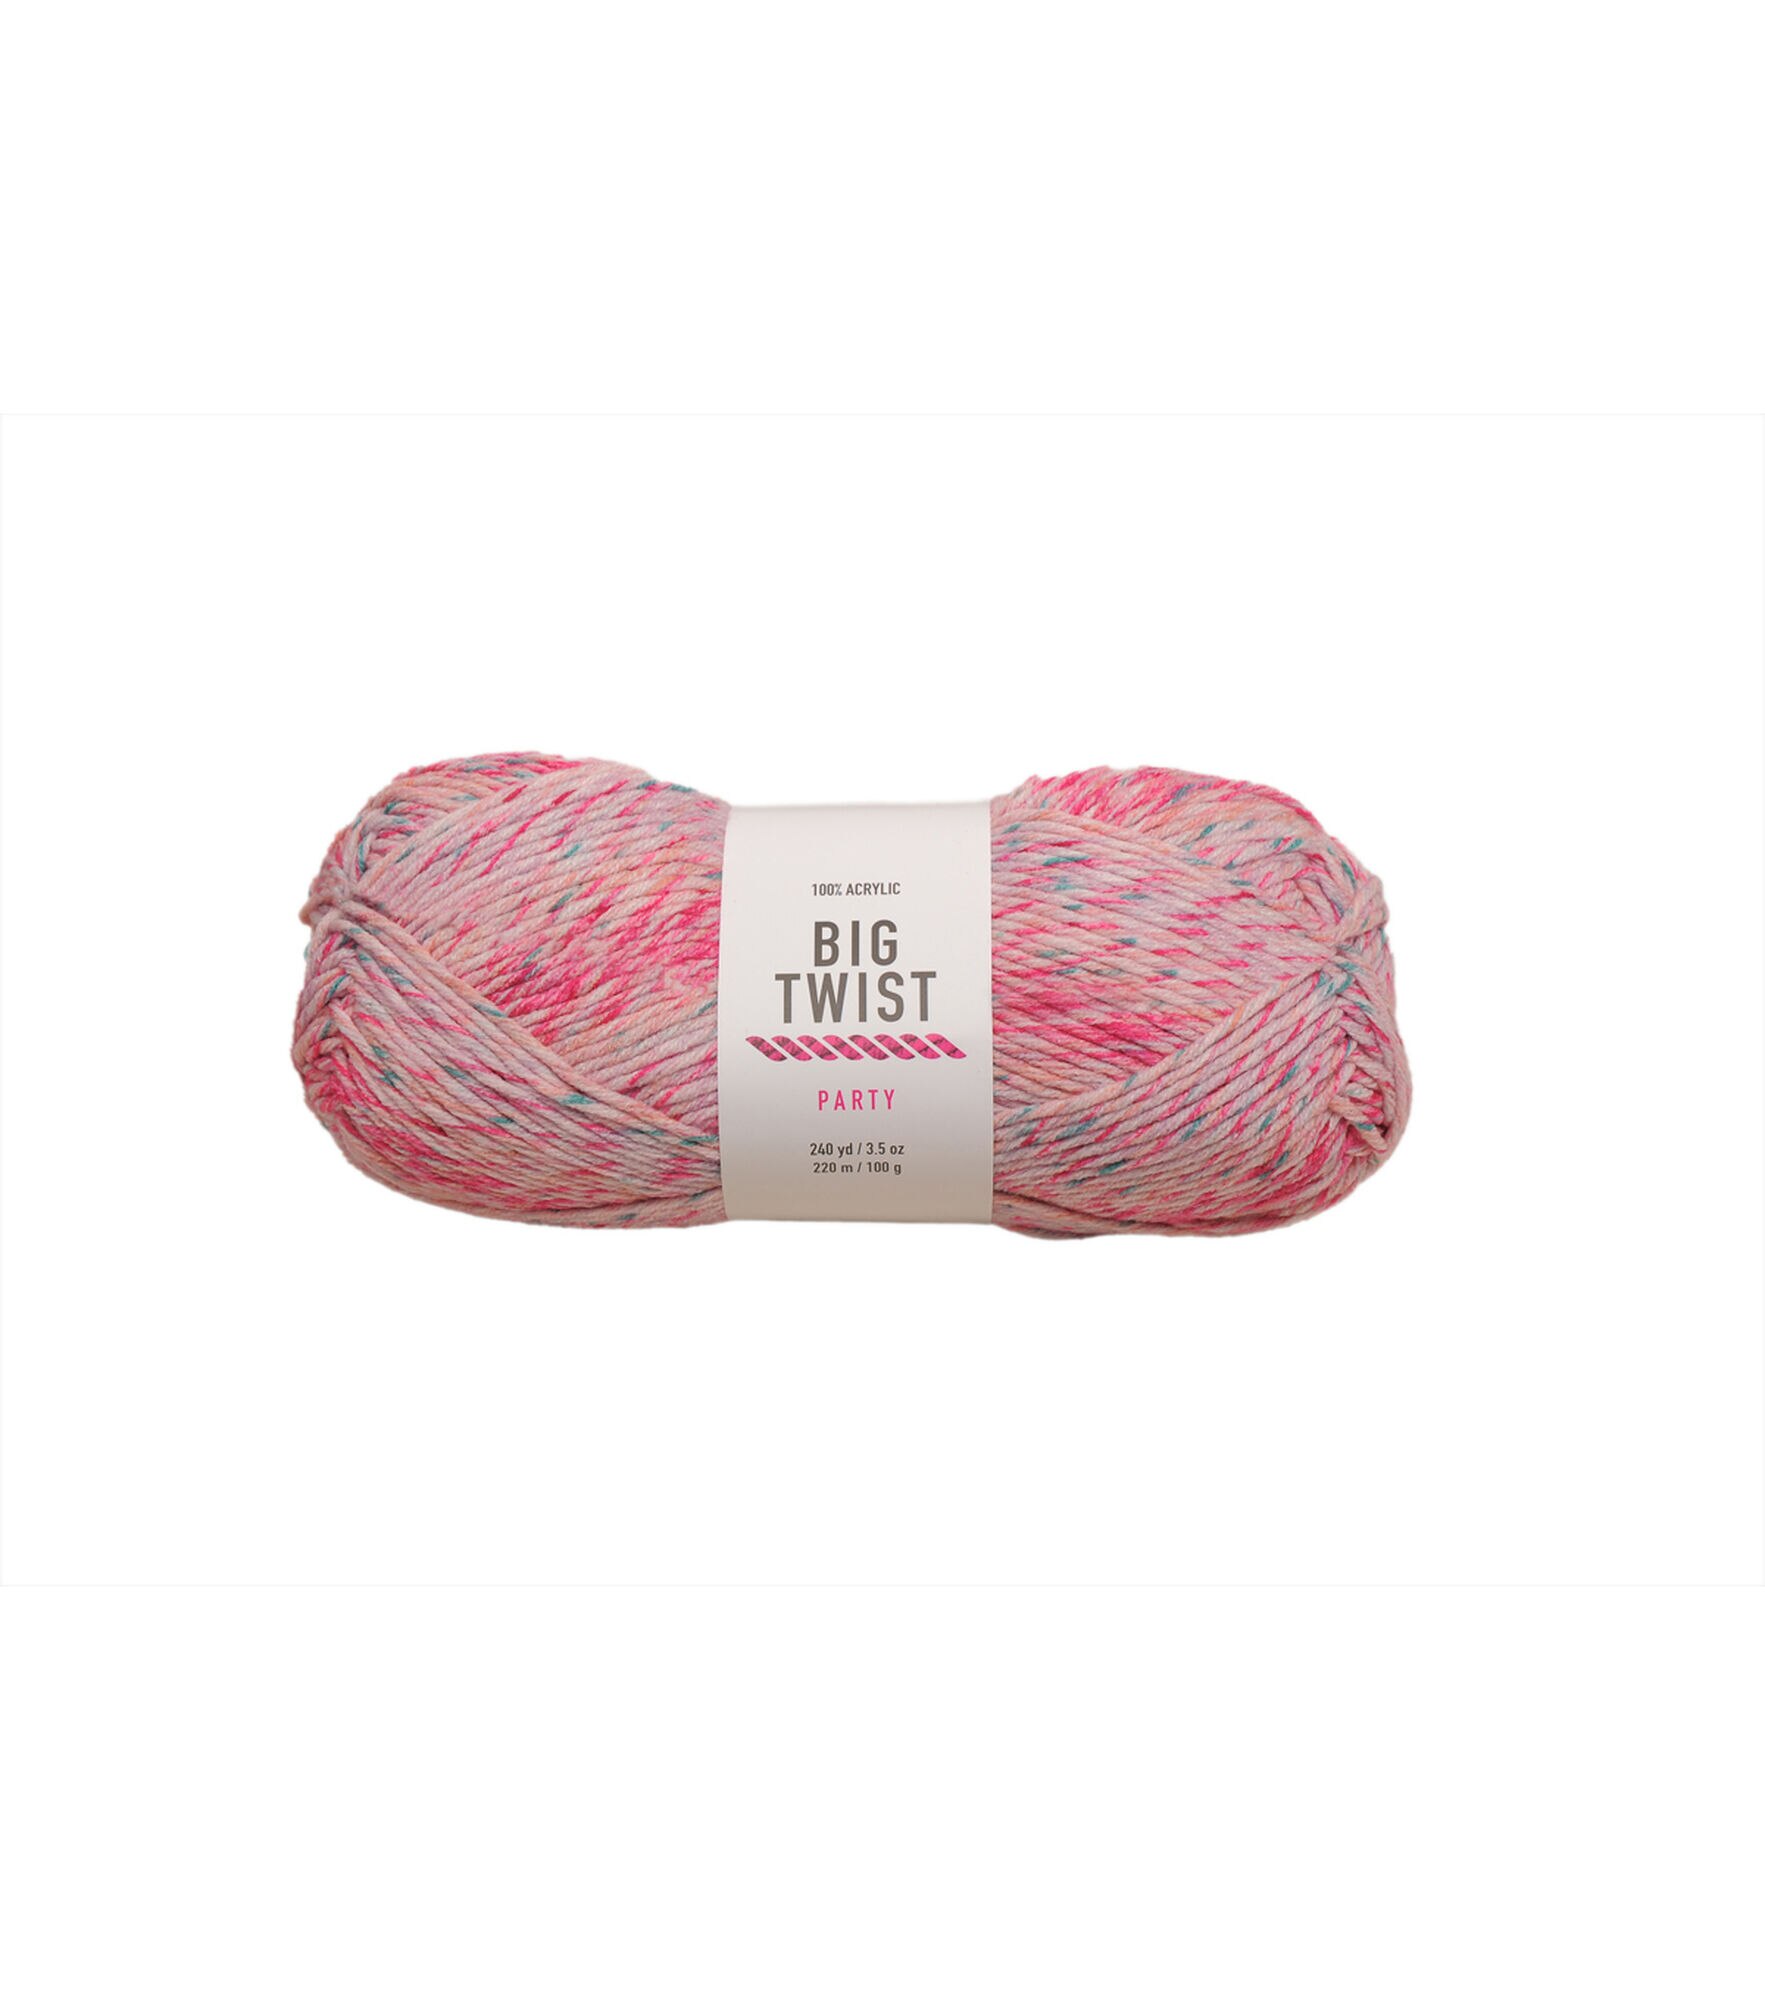 Has anyone noticed that JoAnn's Big Twist yarn has gone down in quality? :  r/craftsnark